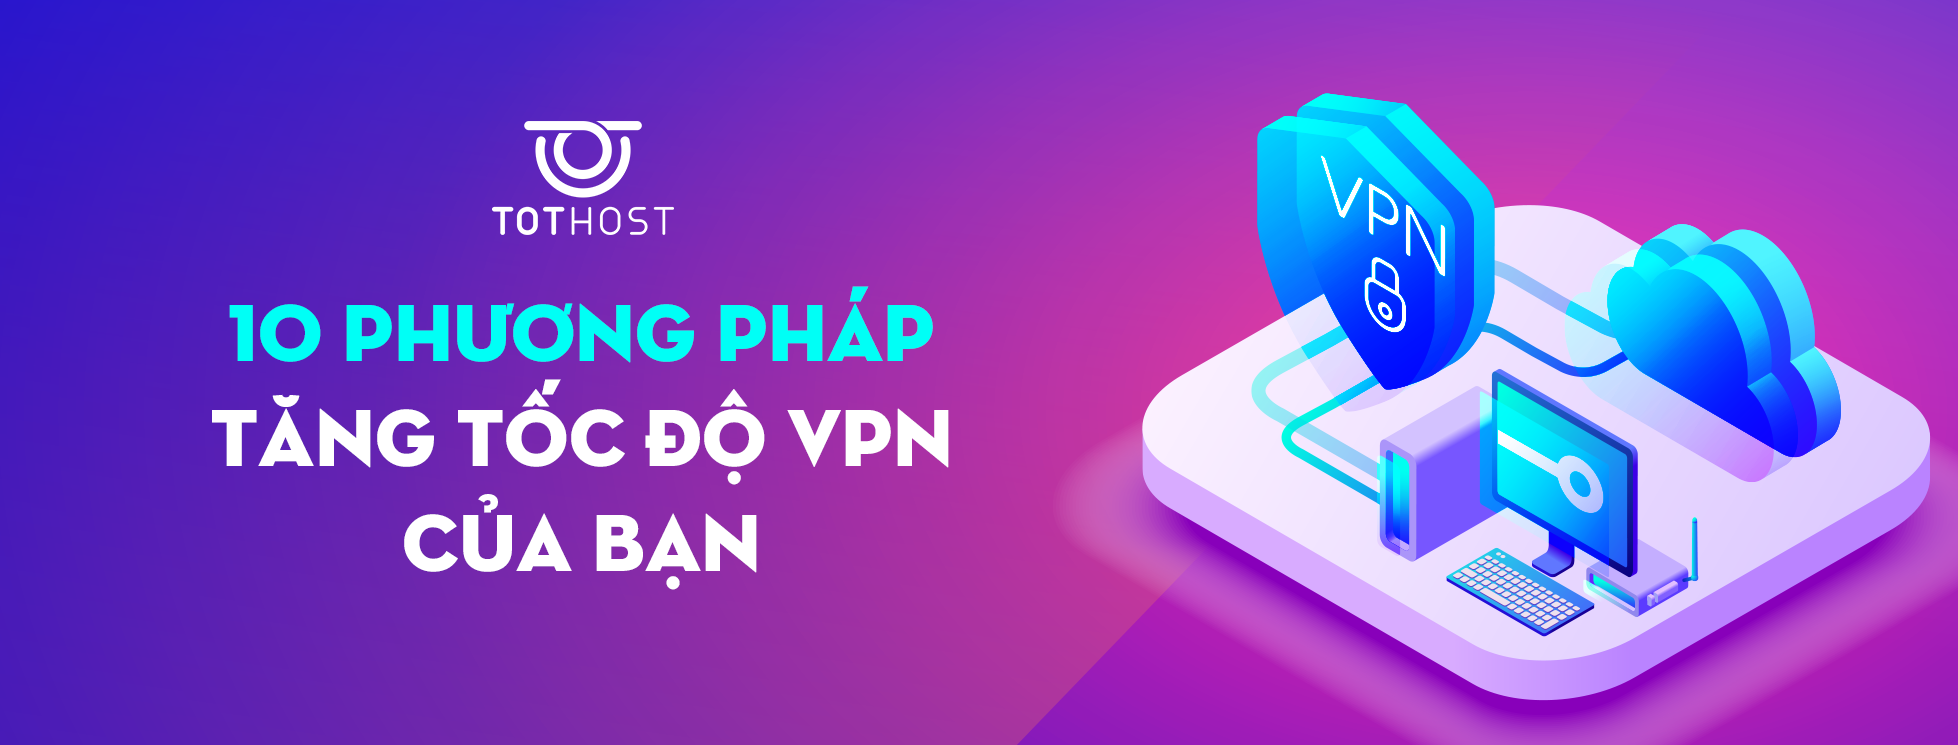 10 phương pháp giúp tăng tốc độ VPN của bạn